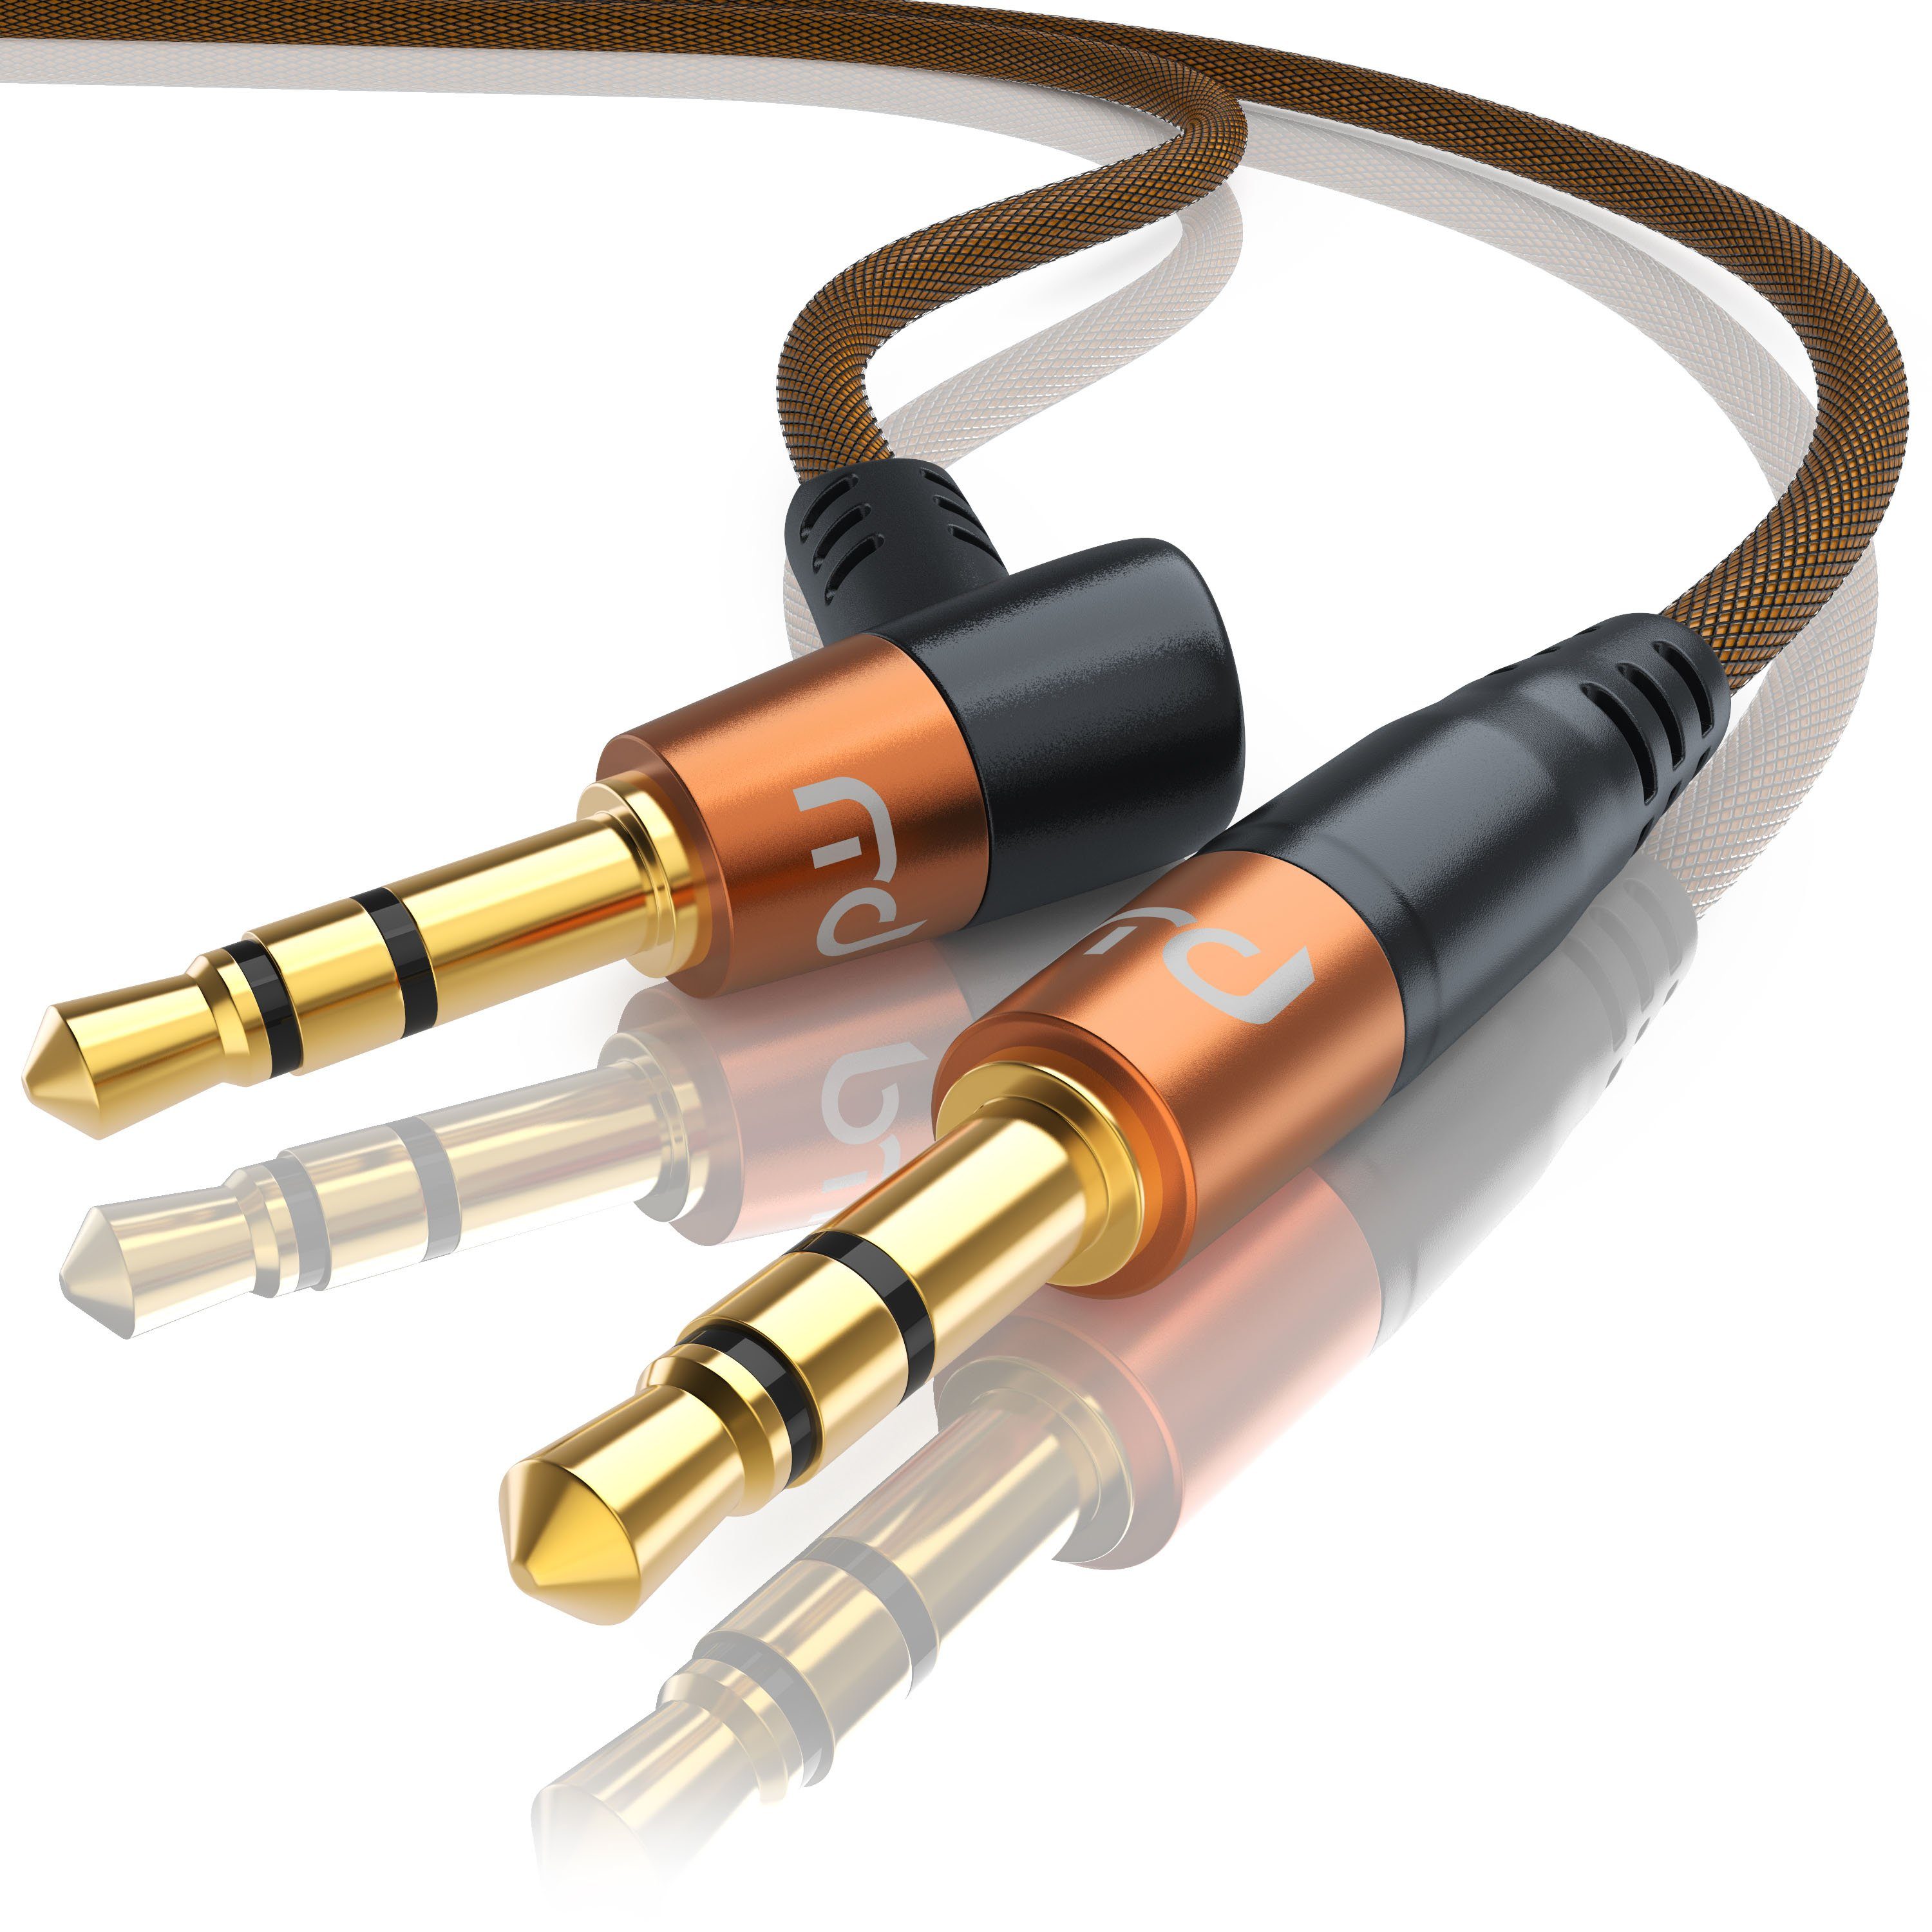 Primewire Audio-Kabel, 3,5-mm-Klinke (110° Winkel); 3,5-mm-Klinke (gerade)  (200 cm), gewinkeltes 3,5mm AUX Audio Klinkenkabel online kaufen | OTTO